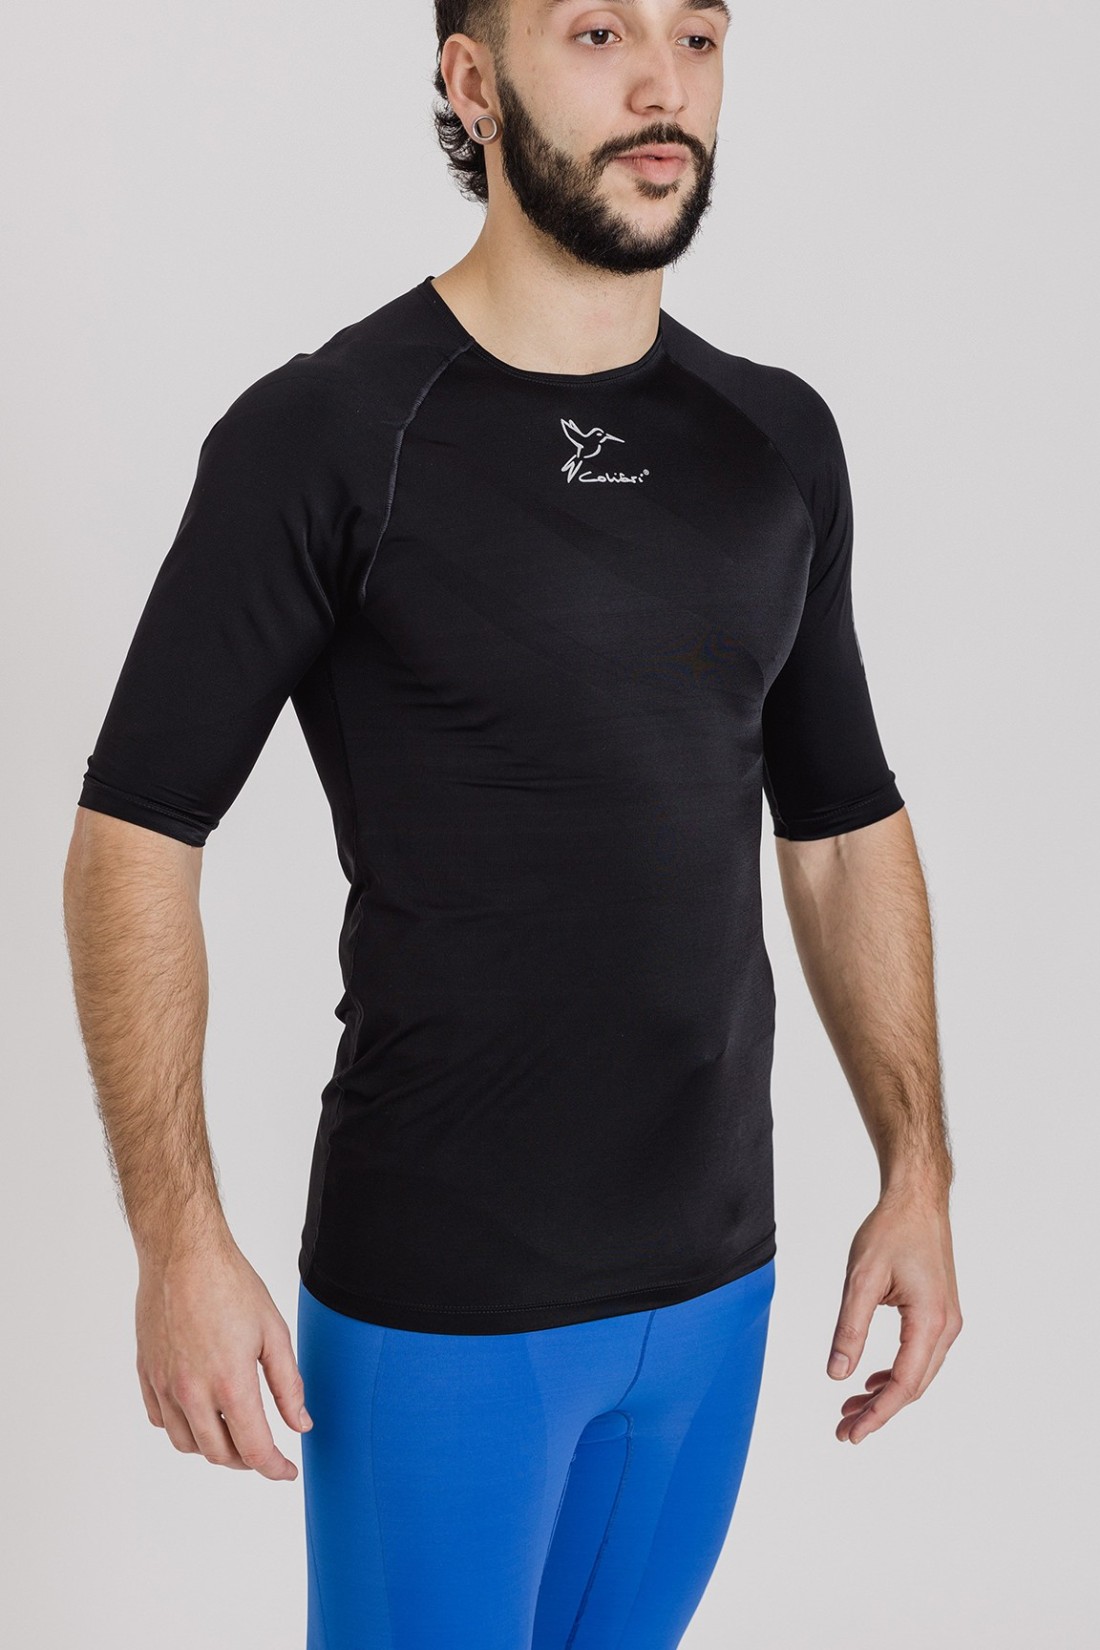 Camiseta protección hombro derecho y compresión 360º Shoulder Pro Right  Size S Color Black